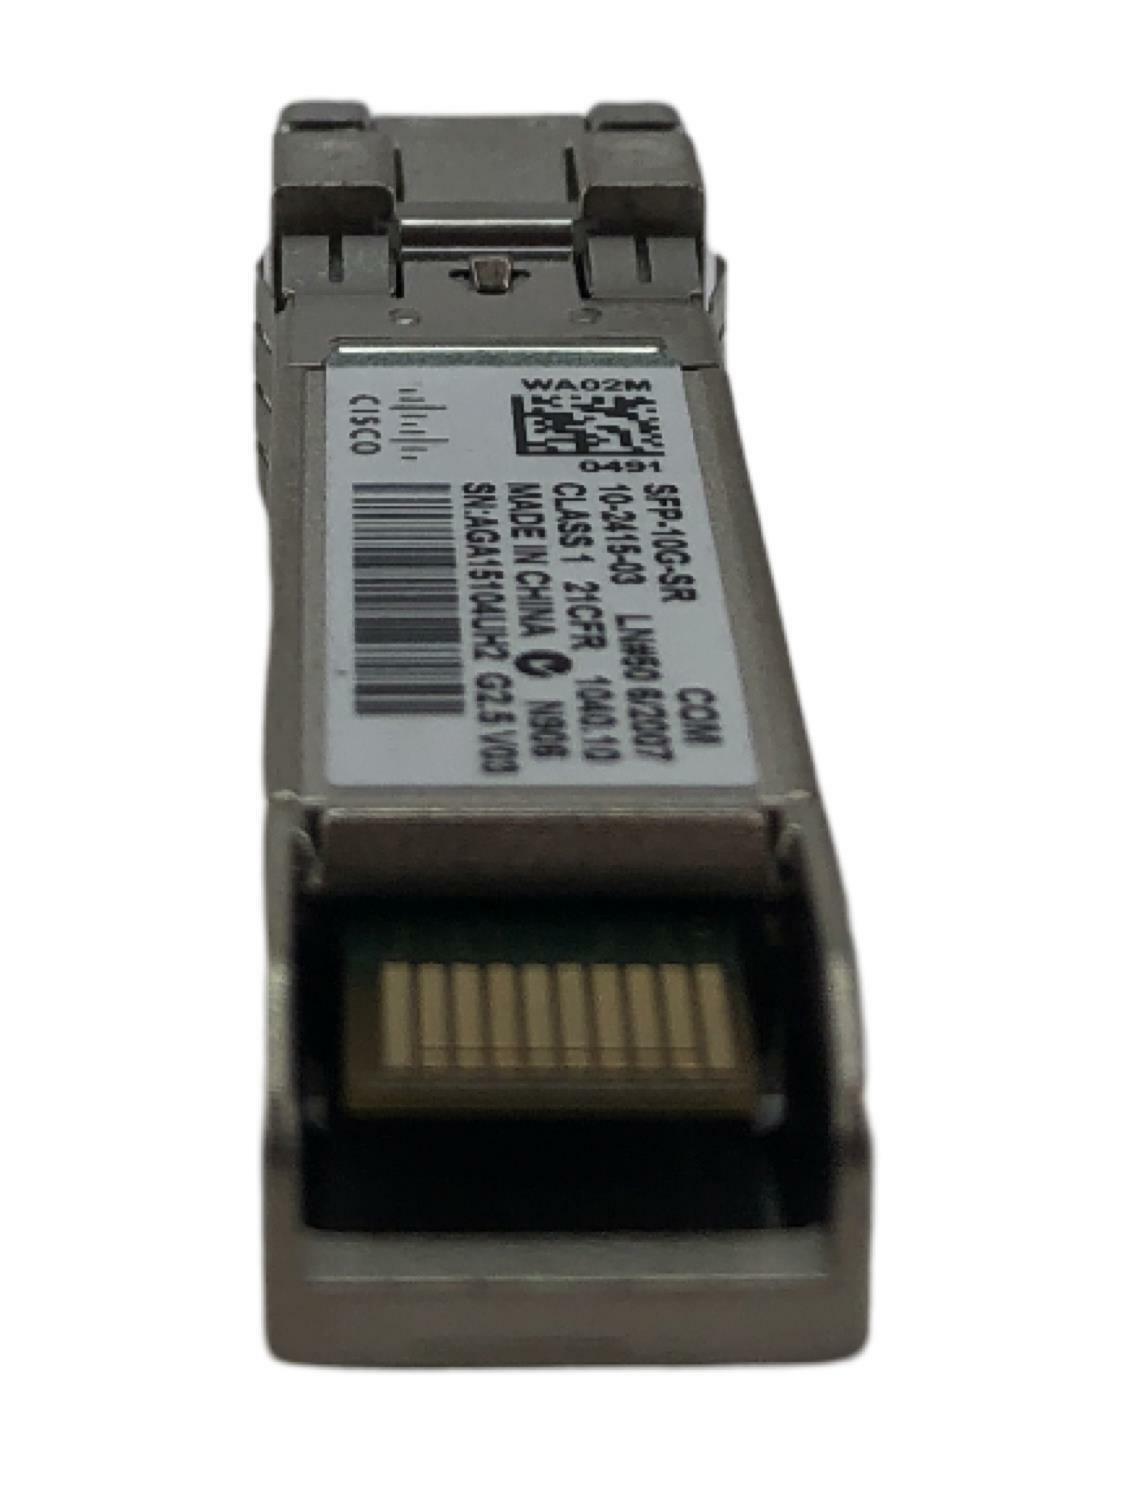 NEW - Open Box - Cisco SFP-10G-SR V03 10GBASE-SR 850nm Multi Mode Transceiver